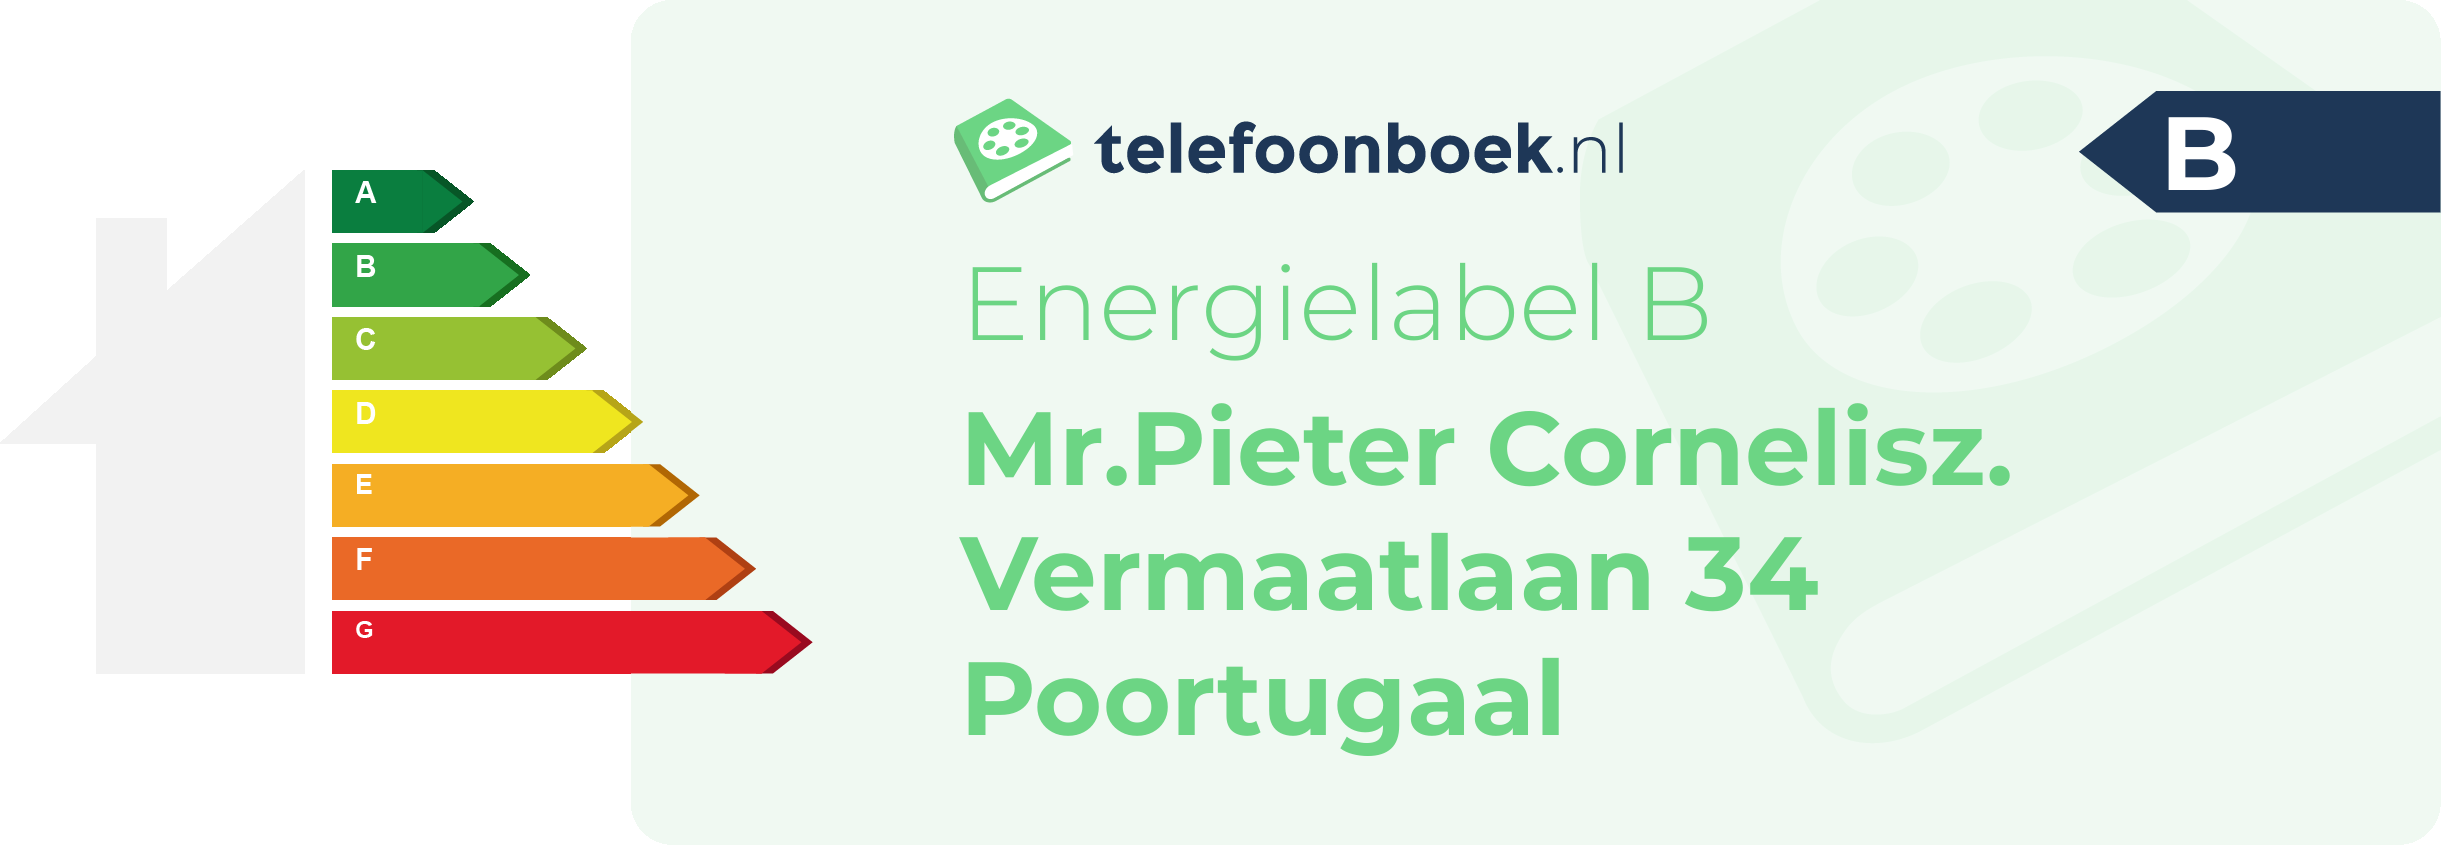 Energielabel Mr.Pieter Cornelisz. Vermaatlaan 34 Poortugaal